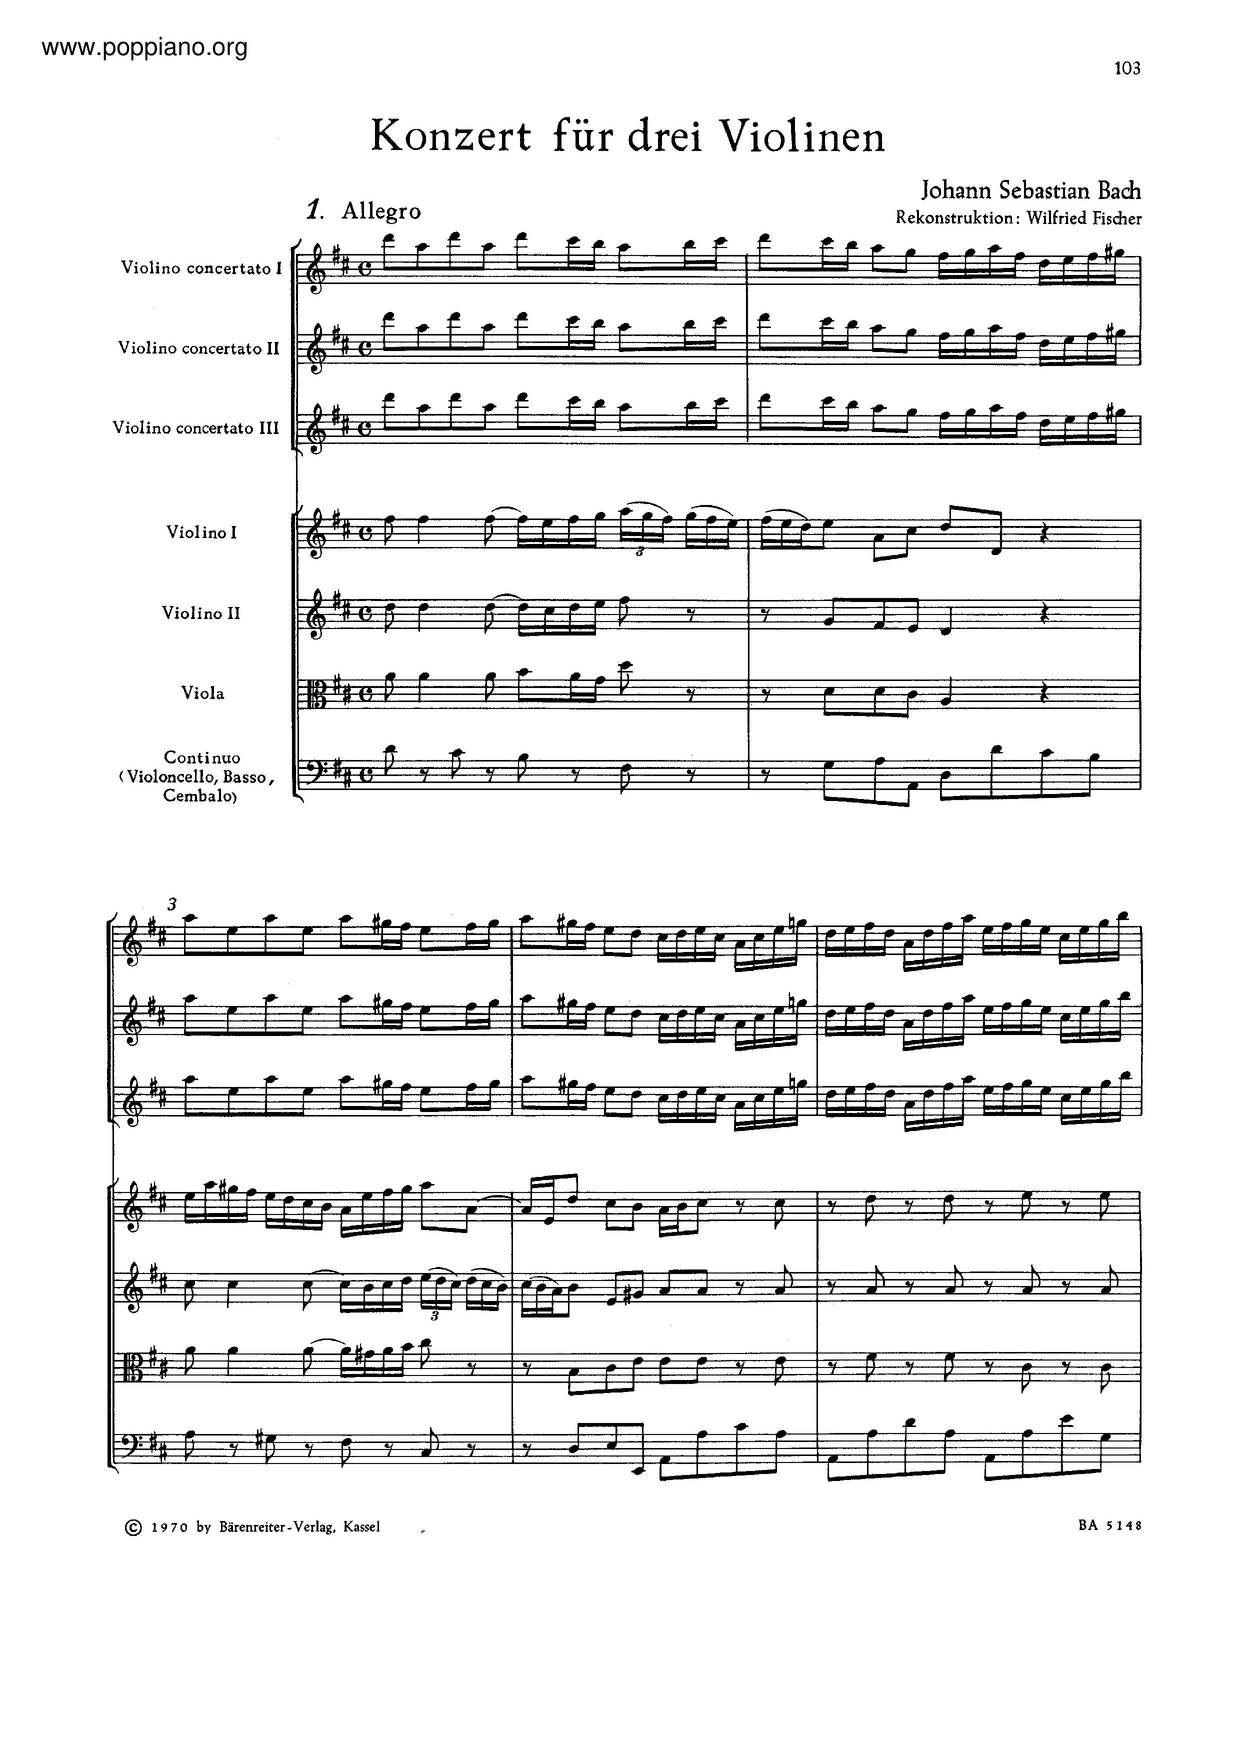 Concerto For 3 Violins In D Major, BWV 1064R琴譜